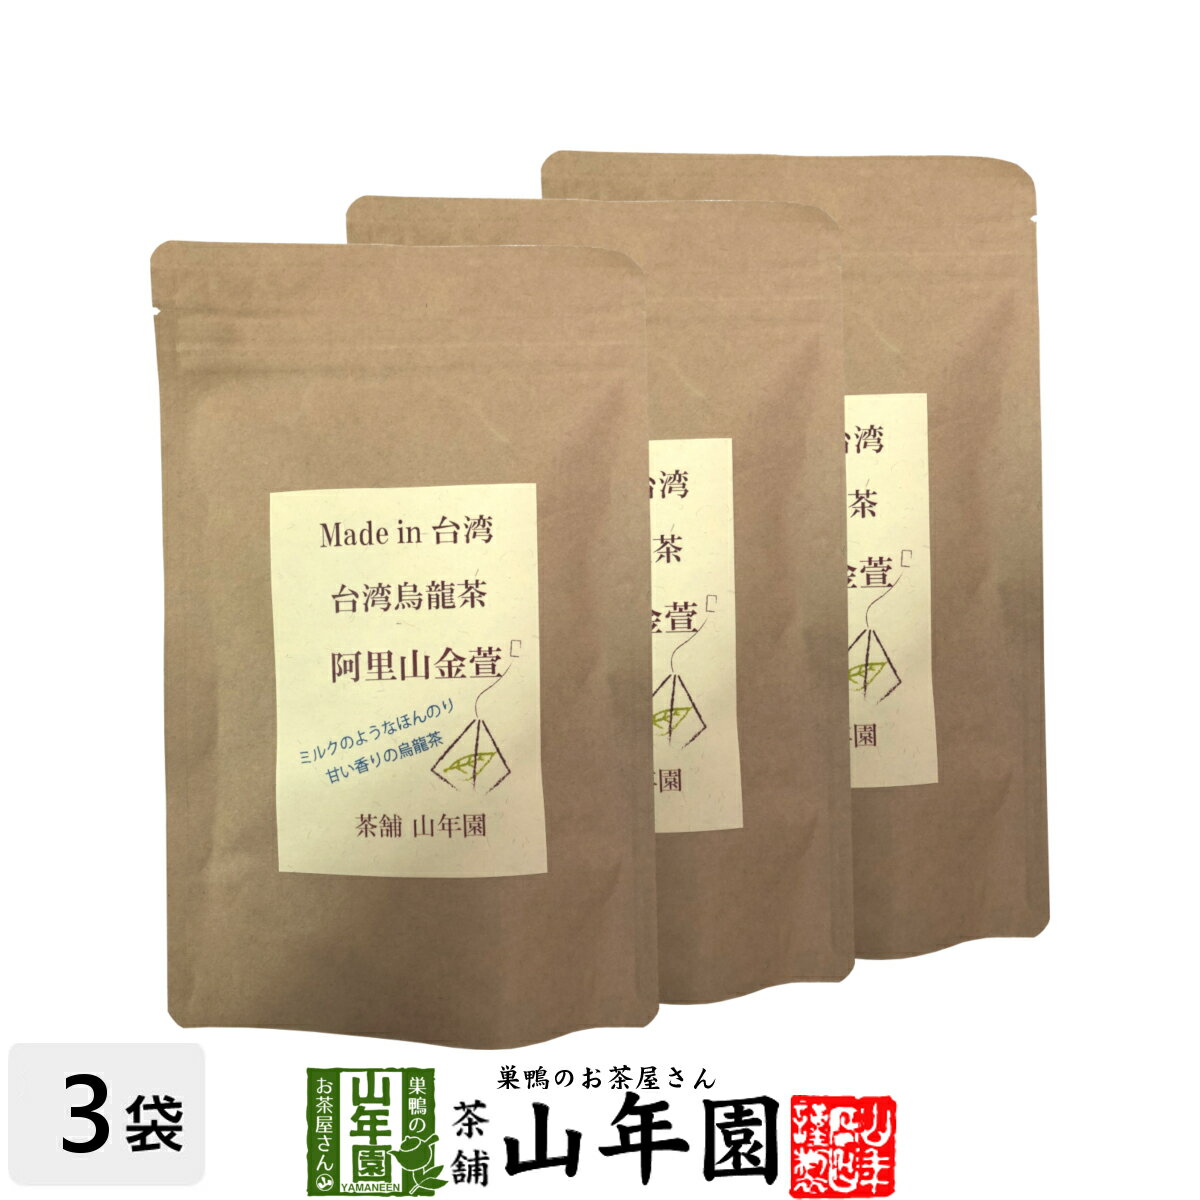 台湾烏龍茶 阿里山金萱 2g×12包×3袋セット台湾の阿里山で収穫された茶葉を使った烏龍茶 ほのかにミルク..